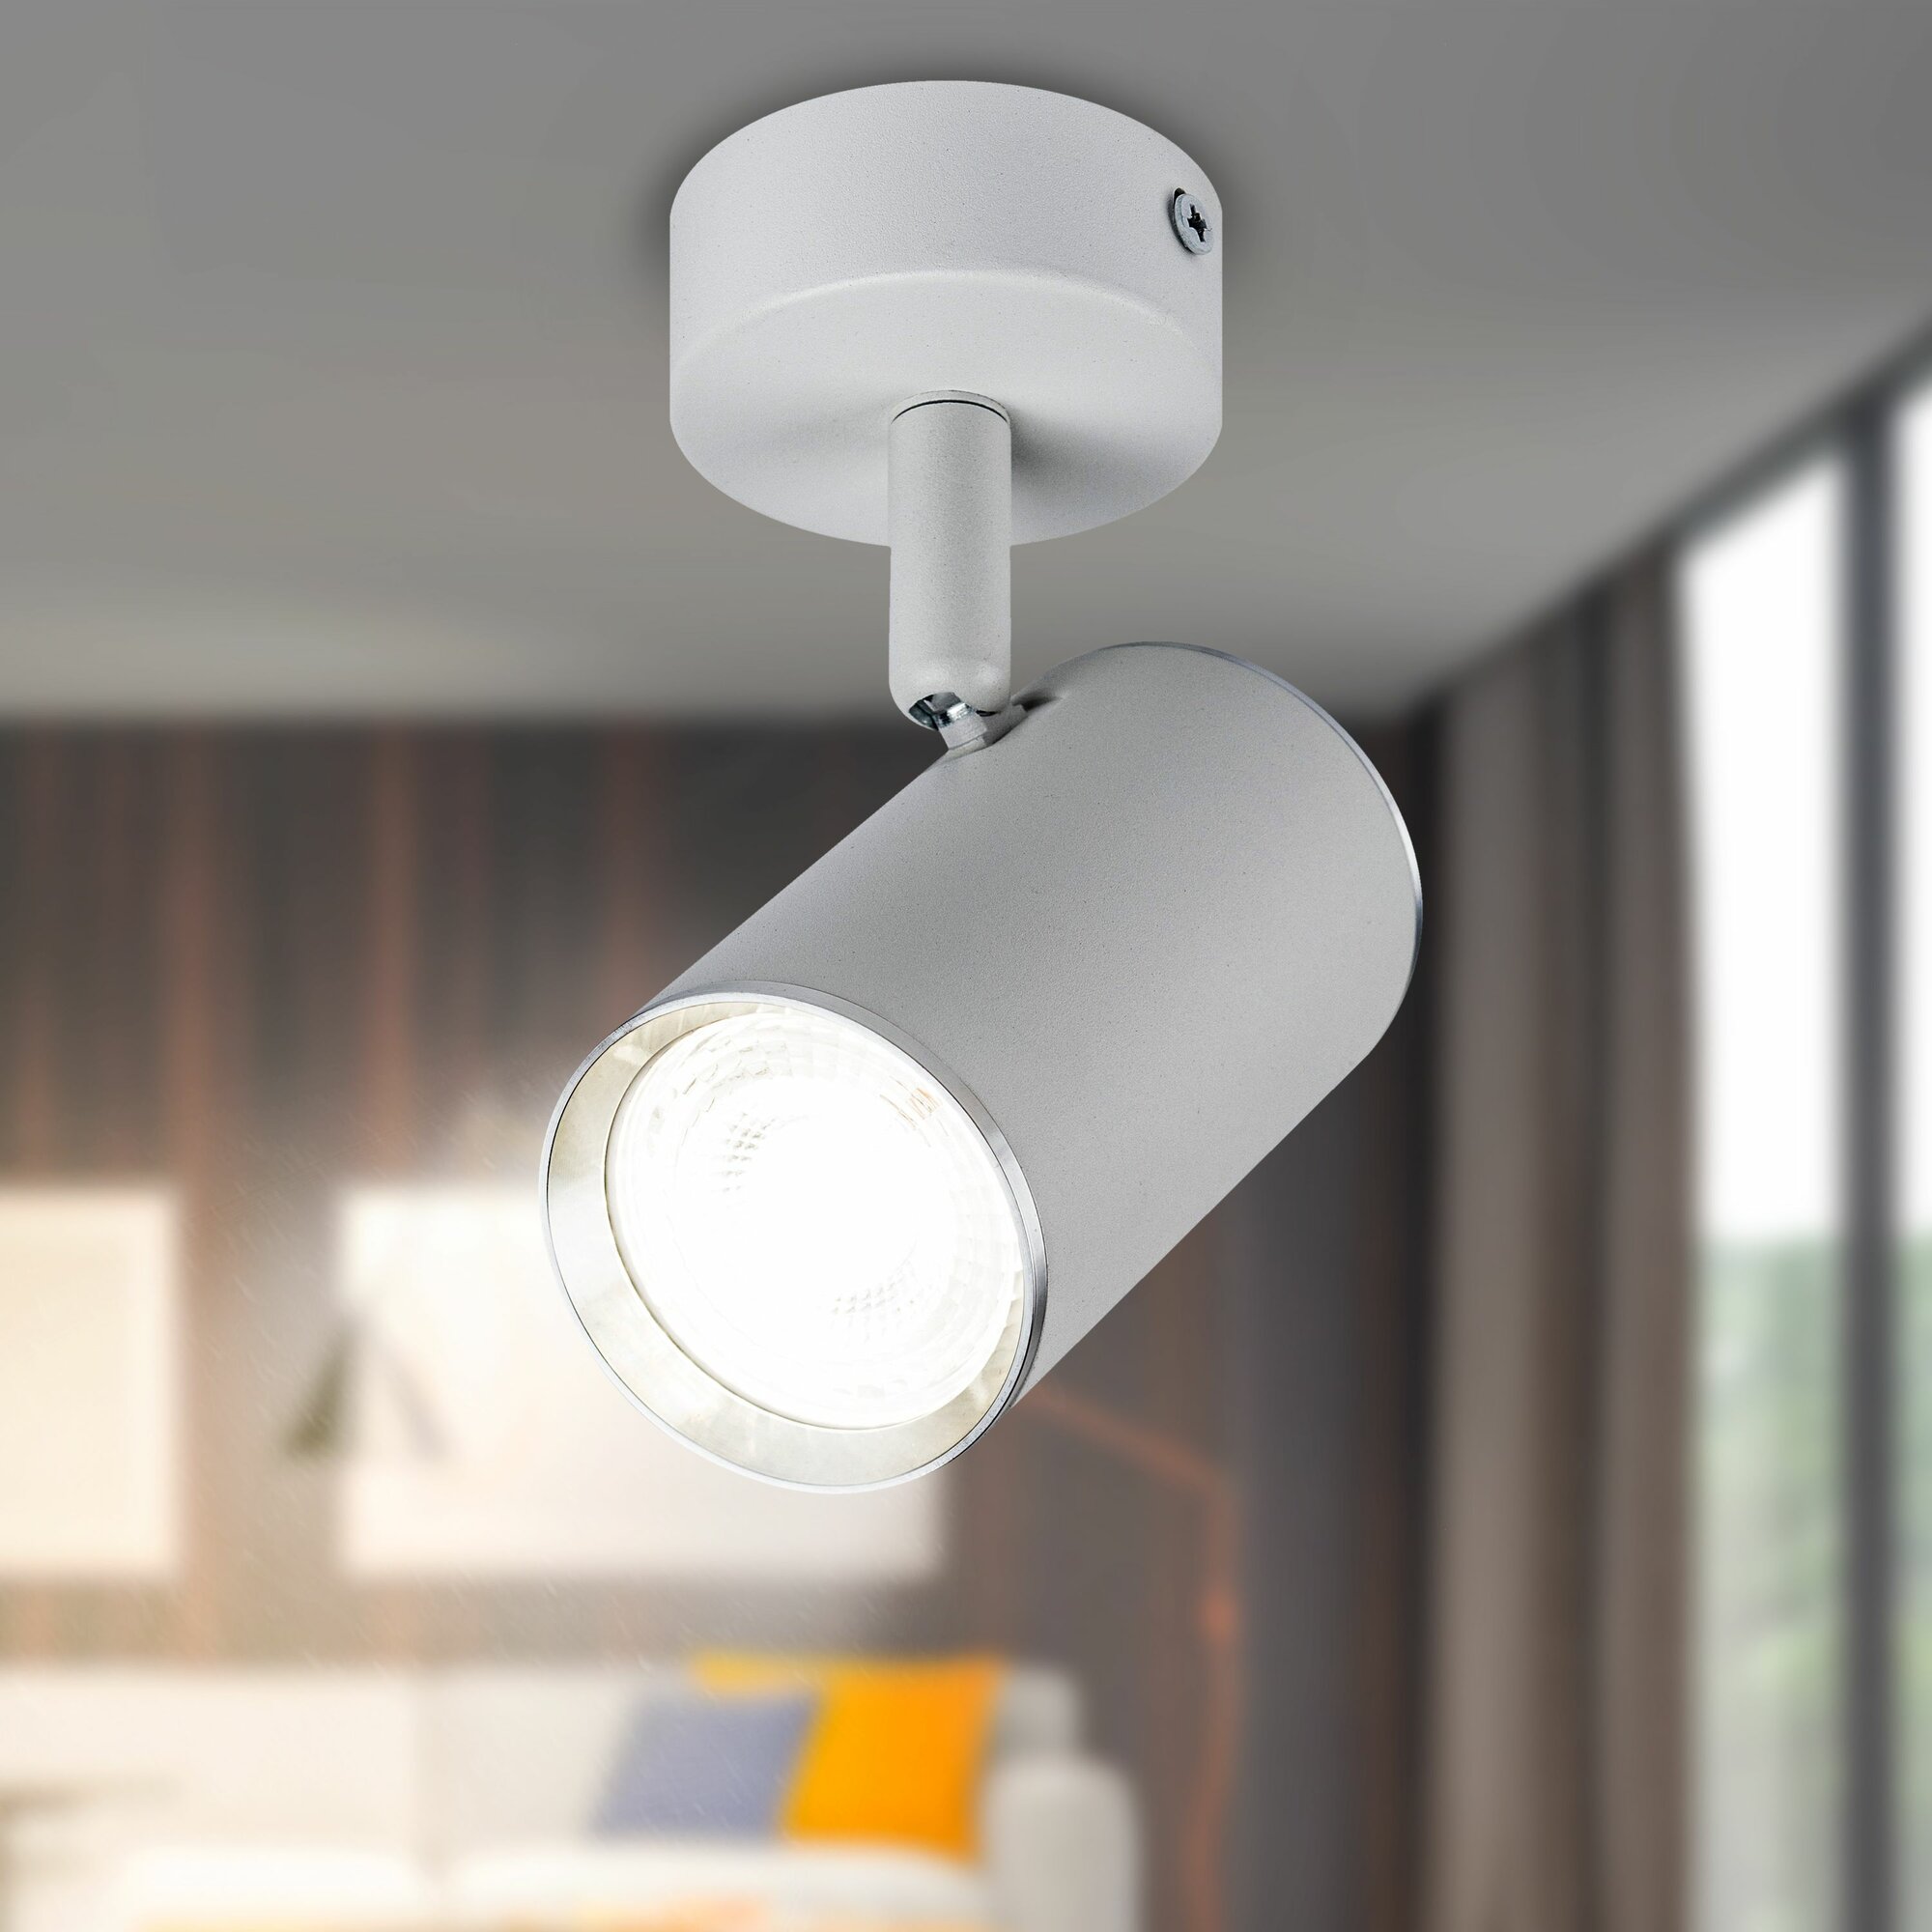 Светильник потолочный ЭРА OL35 WH под лампу MR16 GU10 декоративный на кухню, в детскую комнату, в спальню, в коридор, в прихожую / Спот потолочный накладной, IP20 белый, хром